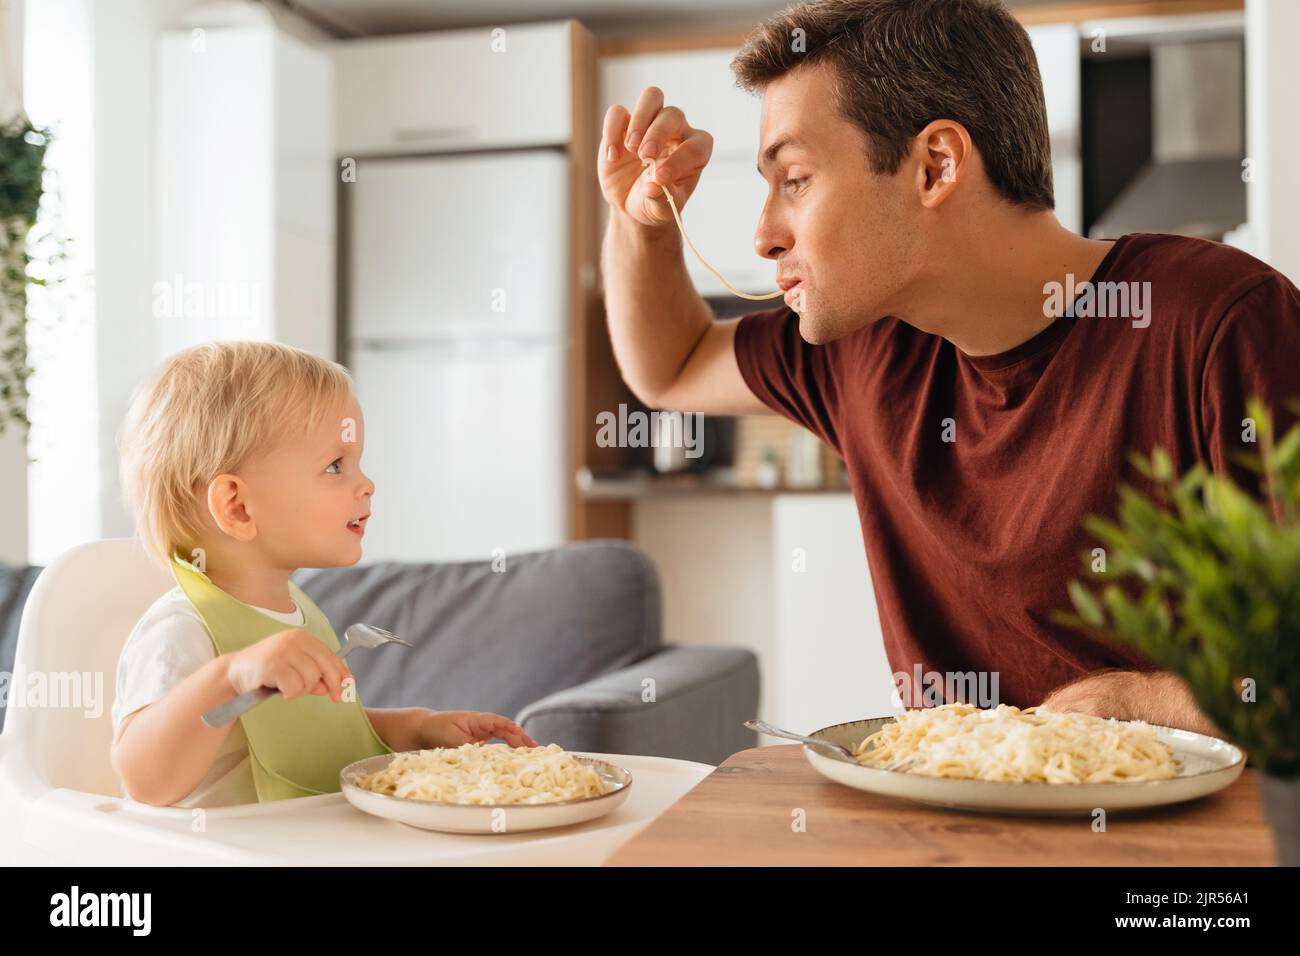 Glücklicher Vater, der mit Spaghetti spielt, während er mit seinem kleinen Jungen im Lätzchen zu Abend isst und dabei mit Gabel isst und lustigen Vater mit Interesse anschaut. Glückliche Vaterschaft, Kind füttern. Vatertag, Familie Stockfoto